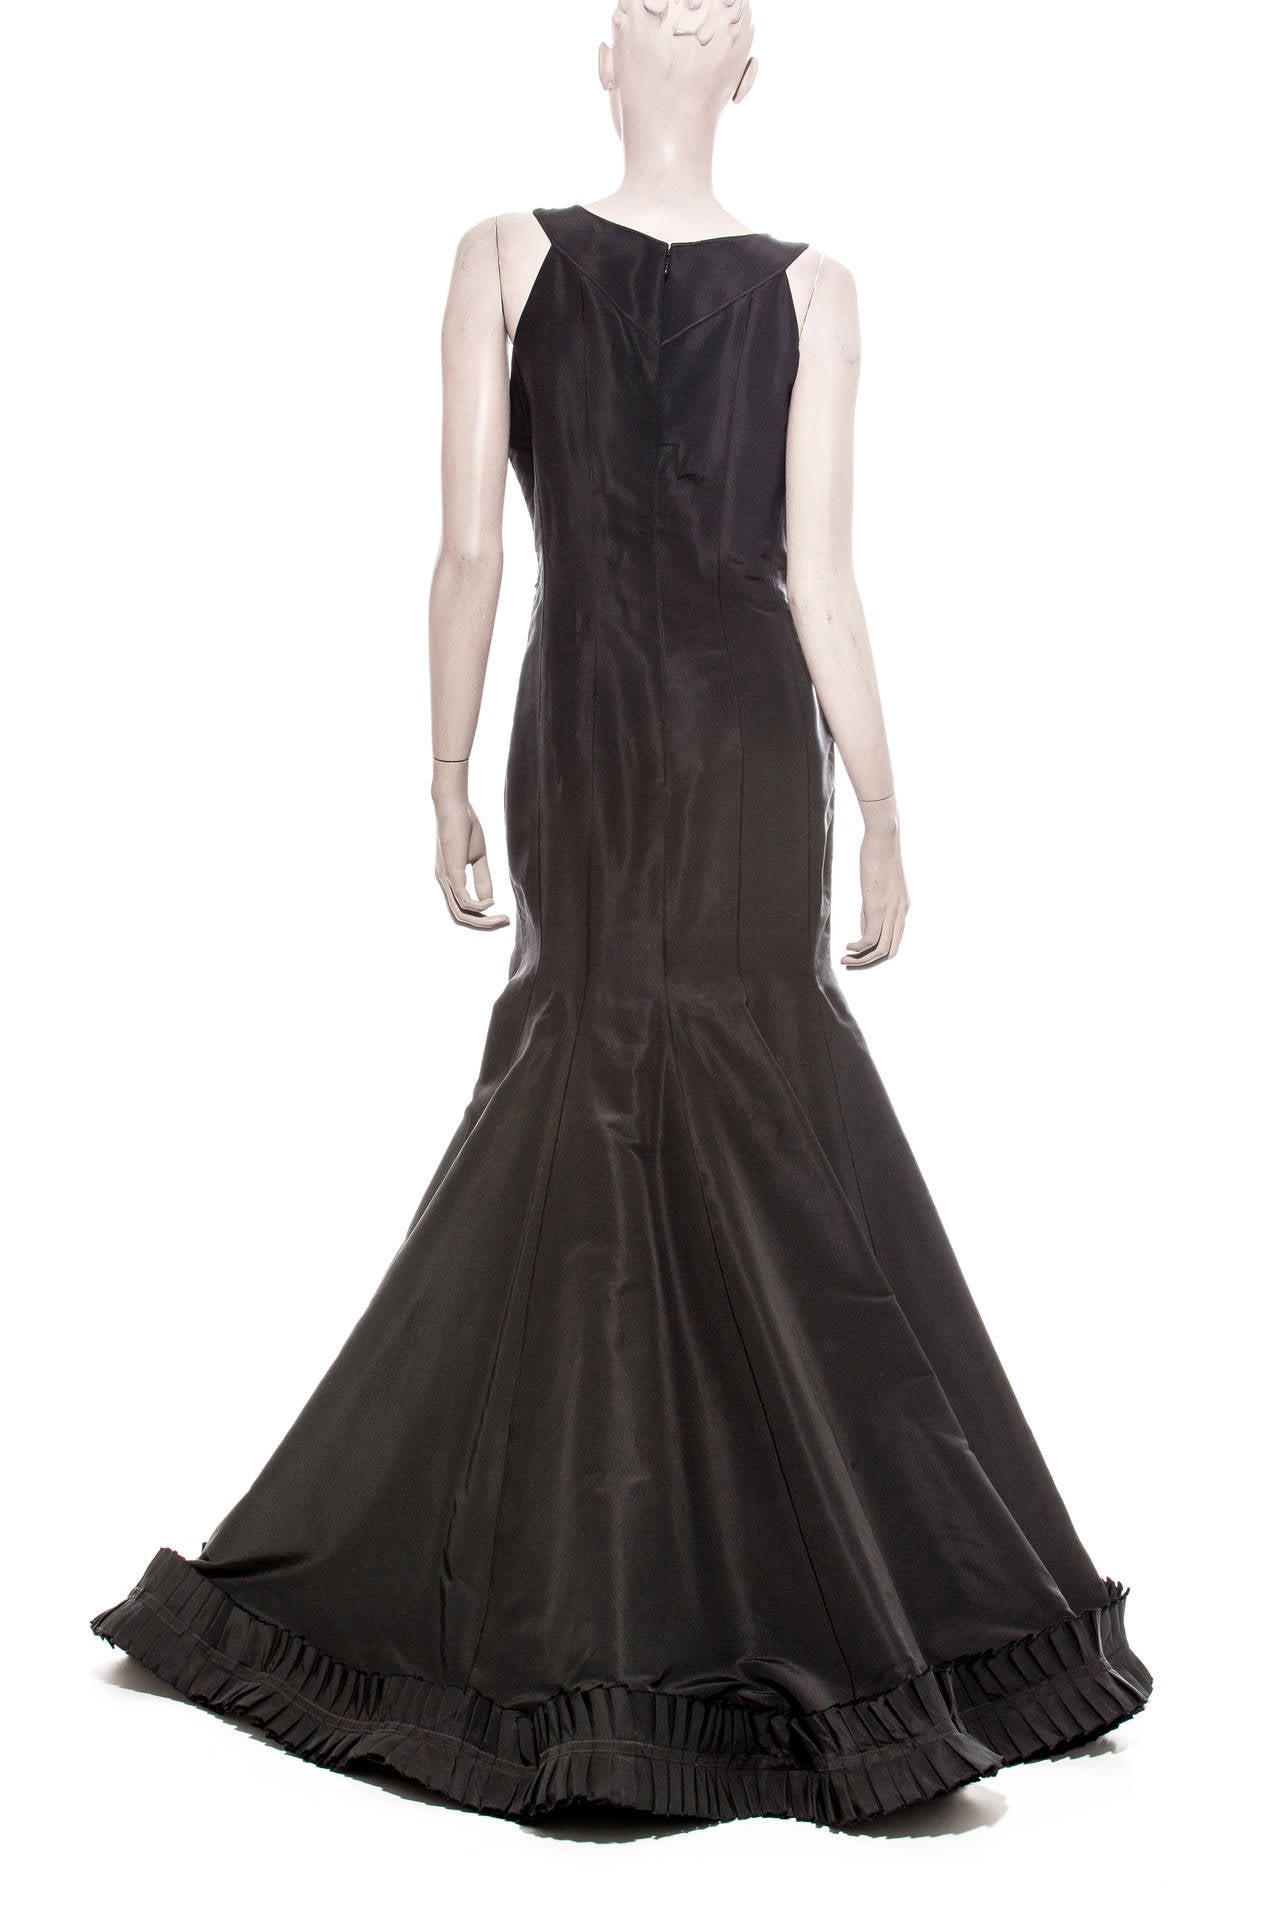 Oscar de la Renta Sleeveless Black Silk Faille Evening Dress, Spring 2007 1